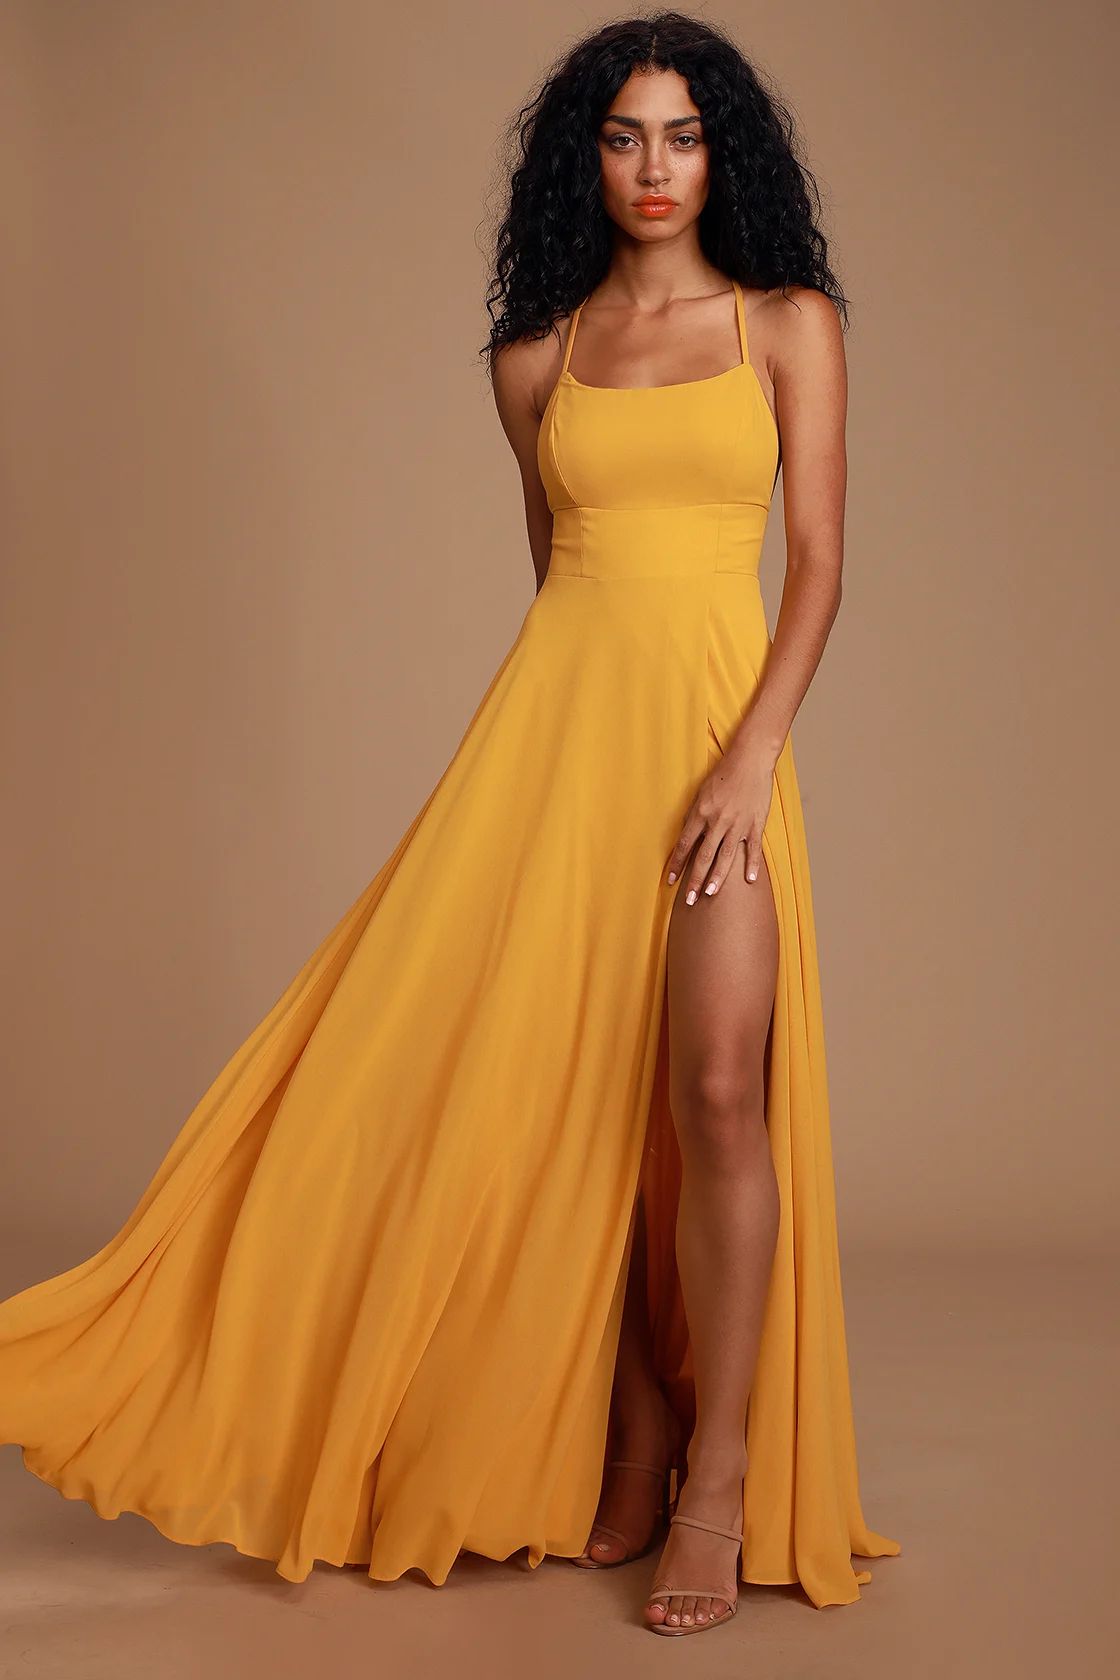 Dreamy Romance Mustard Yellow Backless Maxi Dress | Lulus (US)